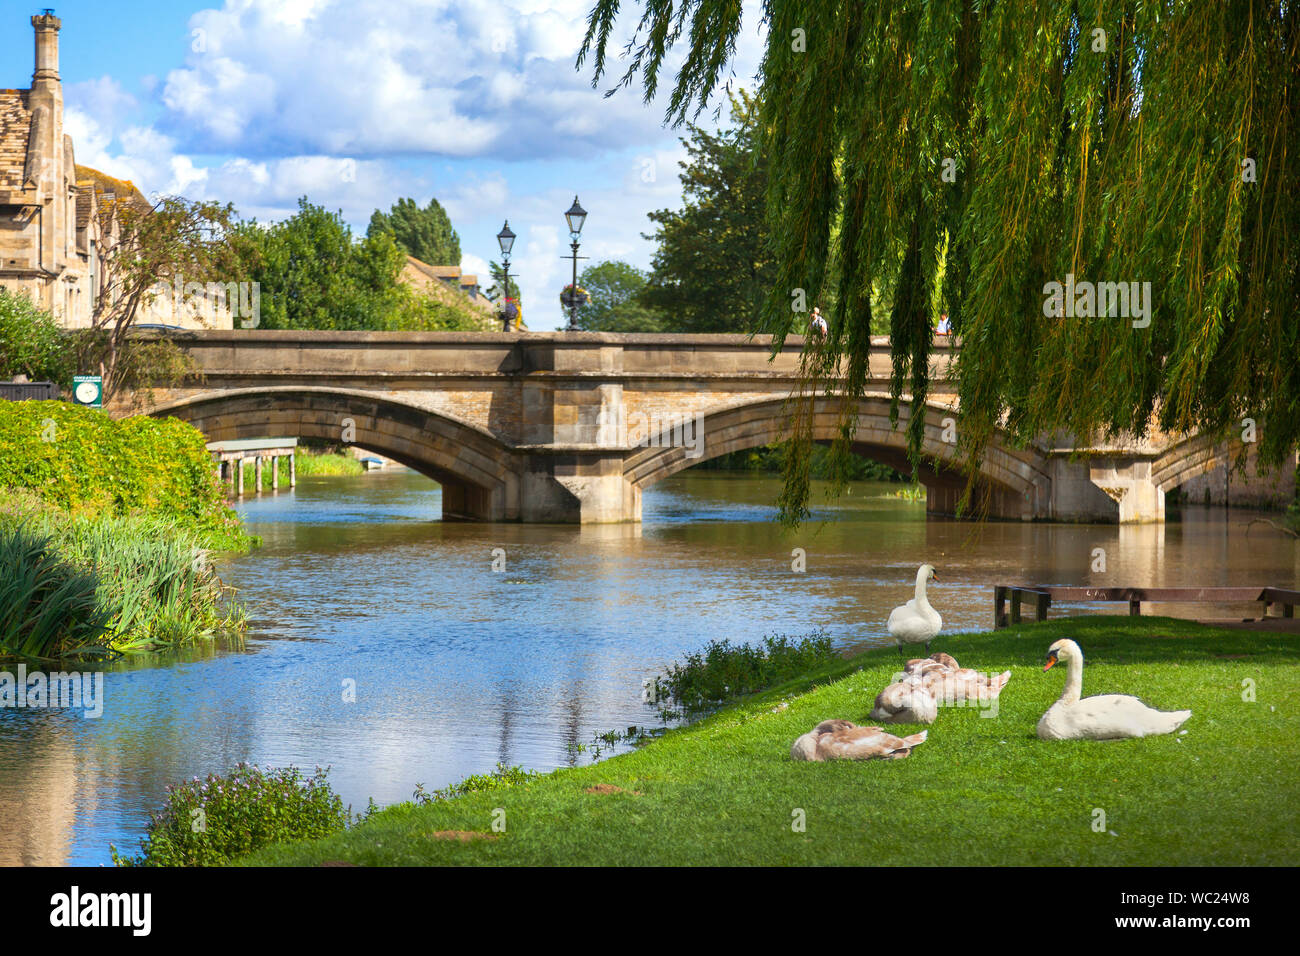 Río Welland, el antiguo puente de Stamford, Lincs. Reino Unido, cisnes en la orilla del río, el sol brillante Foto de stock